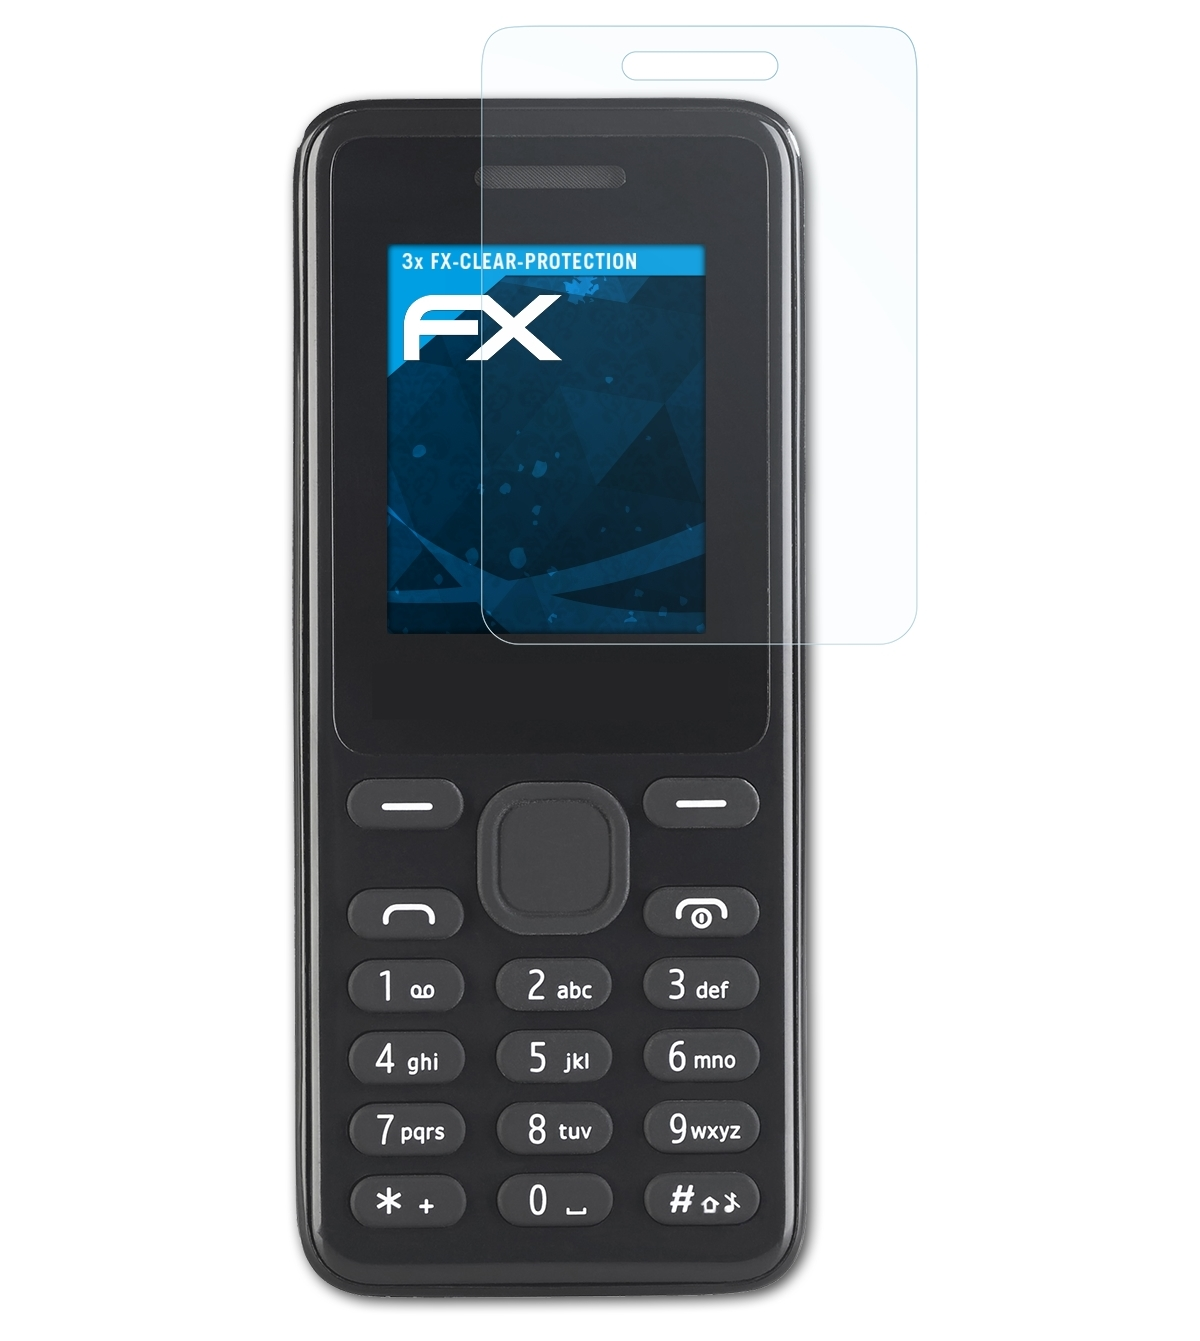 3x Displayschutz(für ATFOLIX FX-Clear Simvalley-Mobile SX-345)